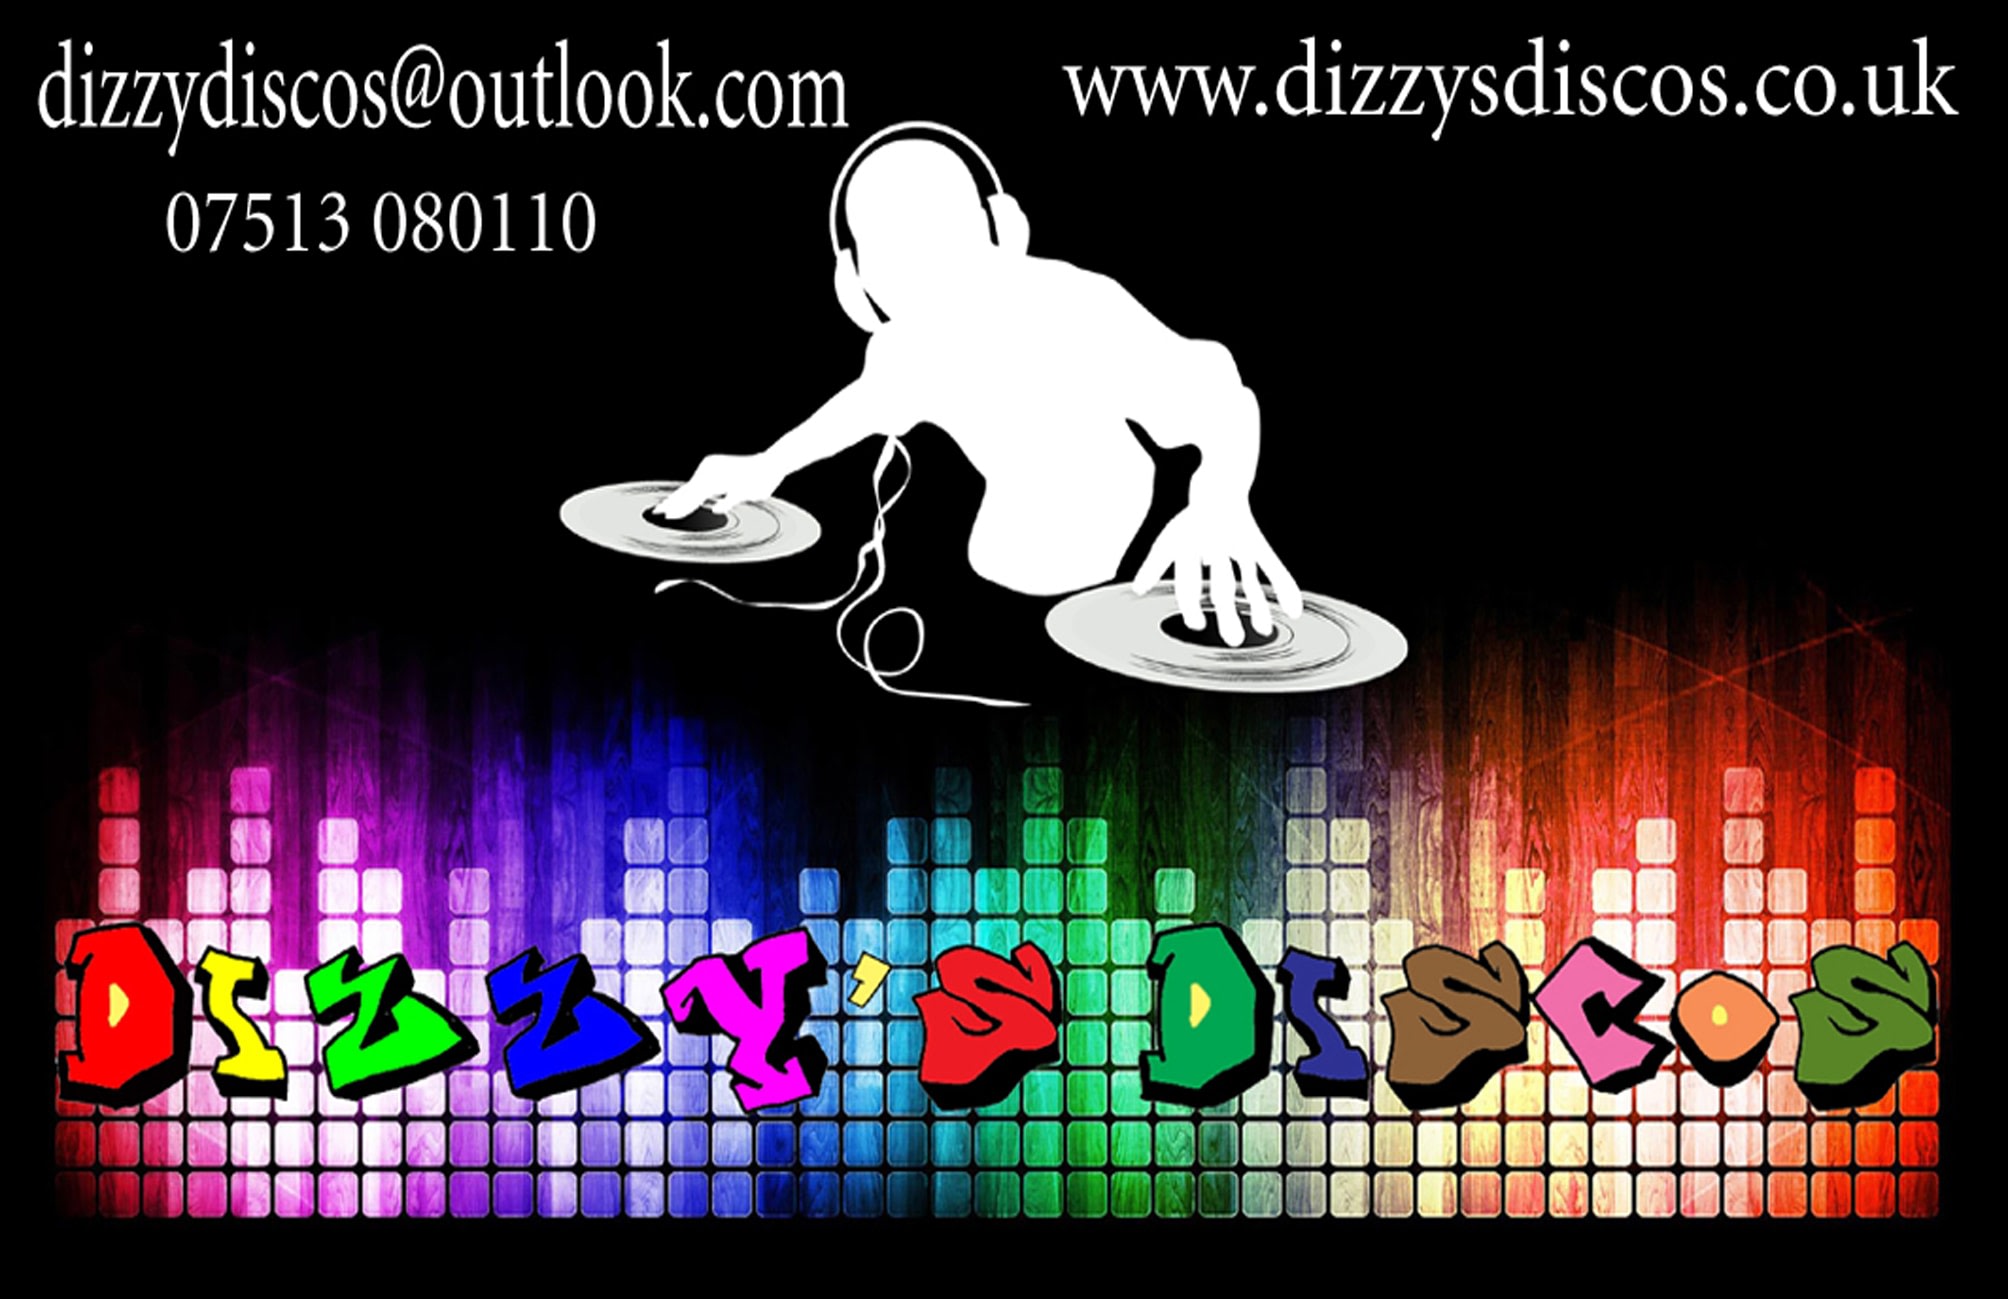 Dizzy's Discos